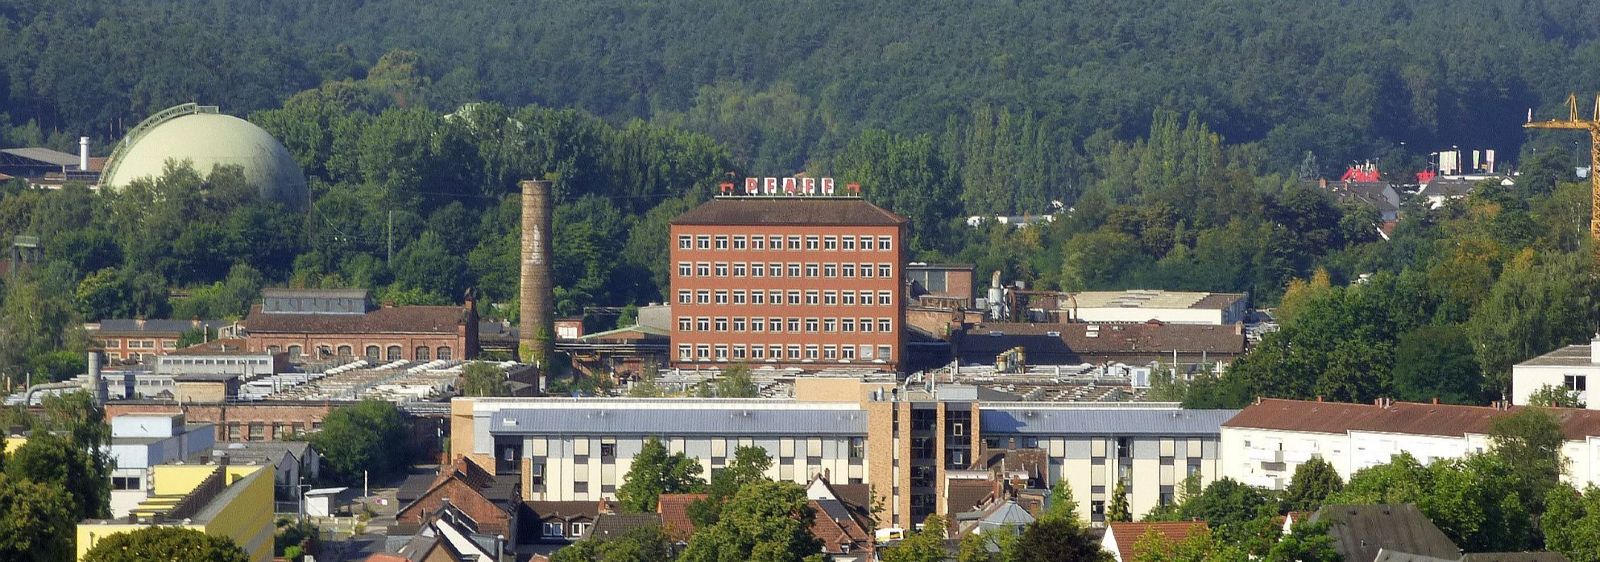 Blick vom Rathaus über die Stadt auf das ehemalige Industrieareal der Nähmaschinenfabrik Pfaff. Gut sichtbar ist das alte Verwaltungsgebäude, das im Laufe des Projektes energetisch saniert wird.